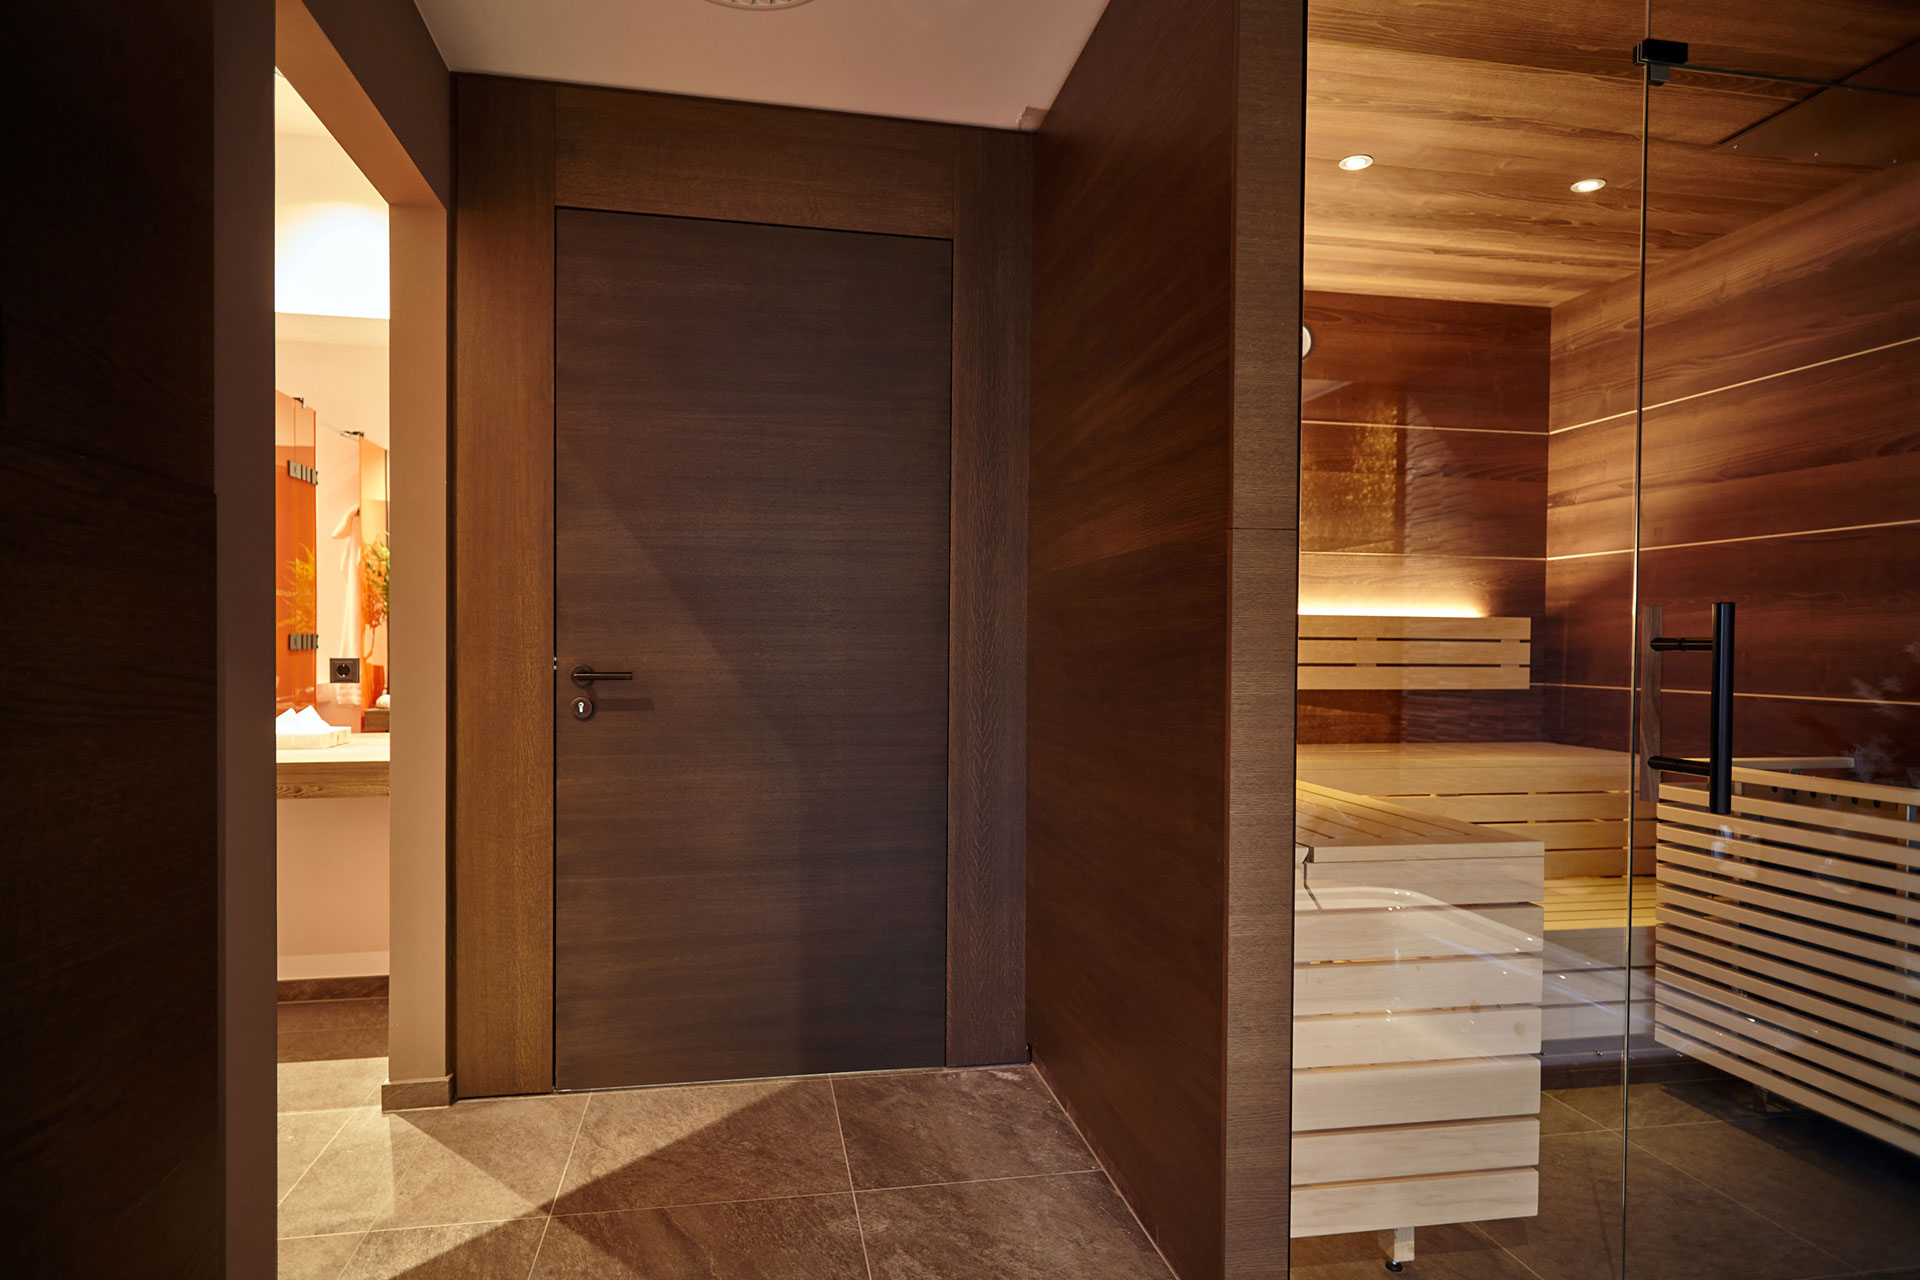 PRUEM hoteltueren fuer sauna und spa im moselschloesschen